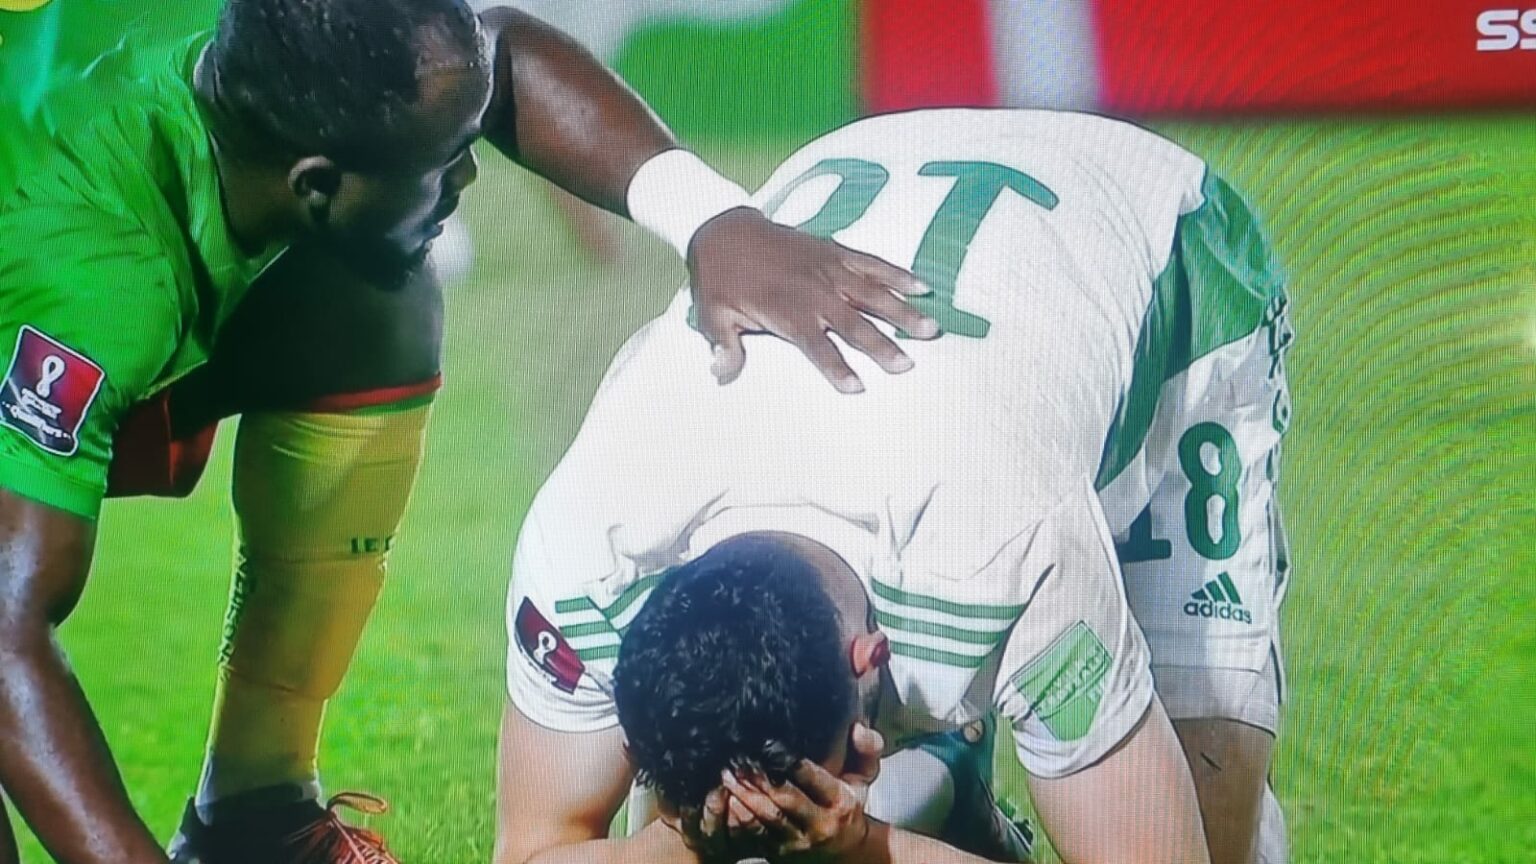 نهاية خزينة للاعبي المنتخب الجزائري